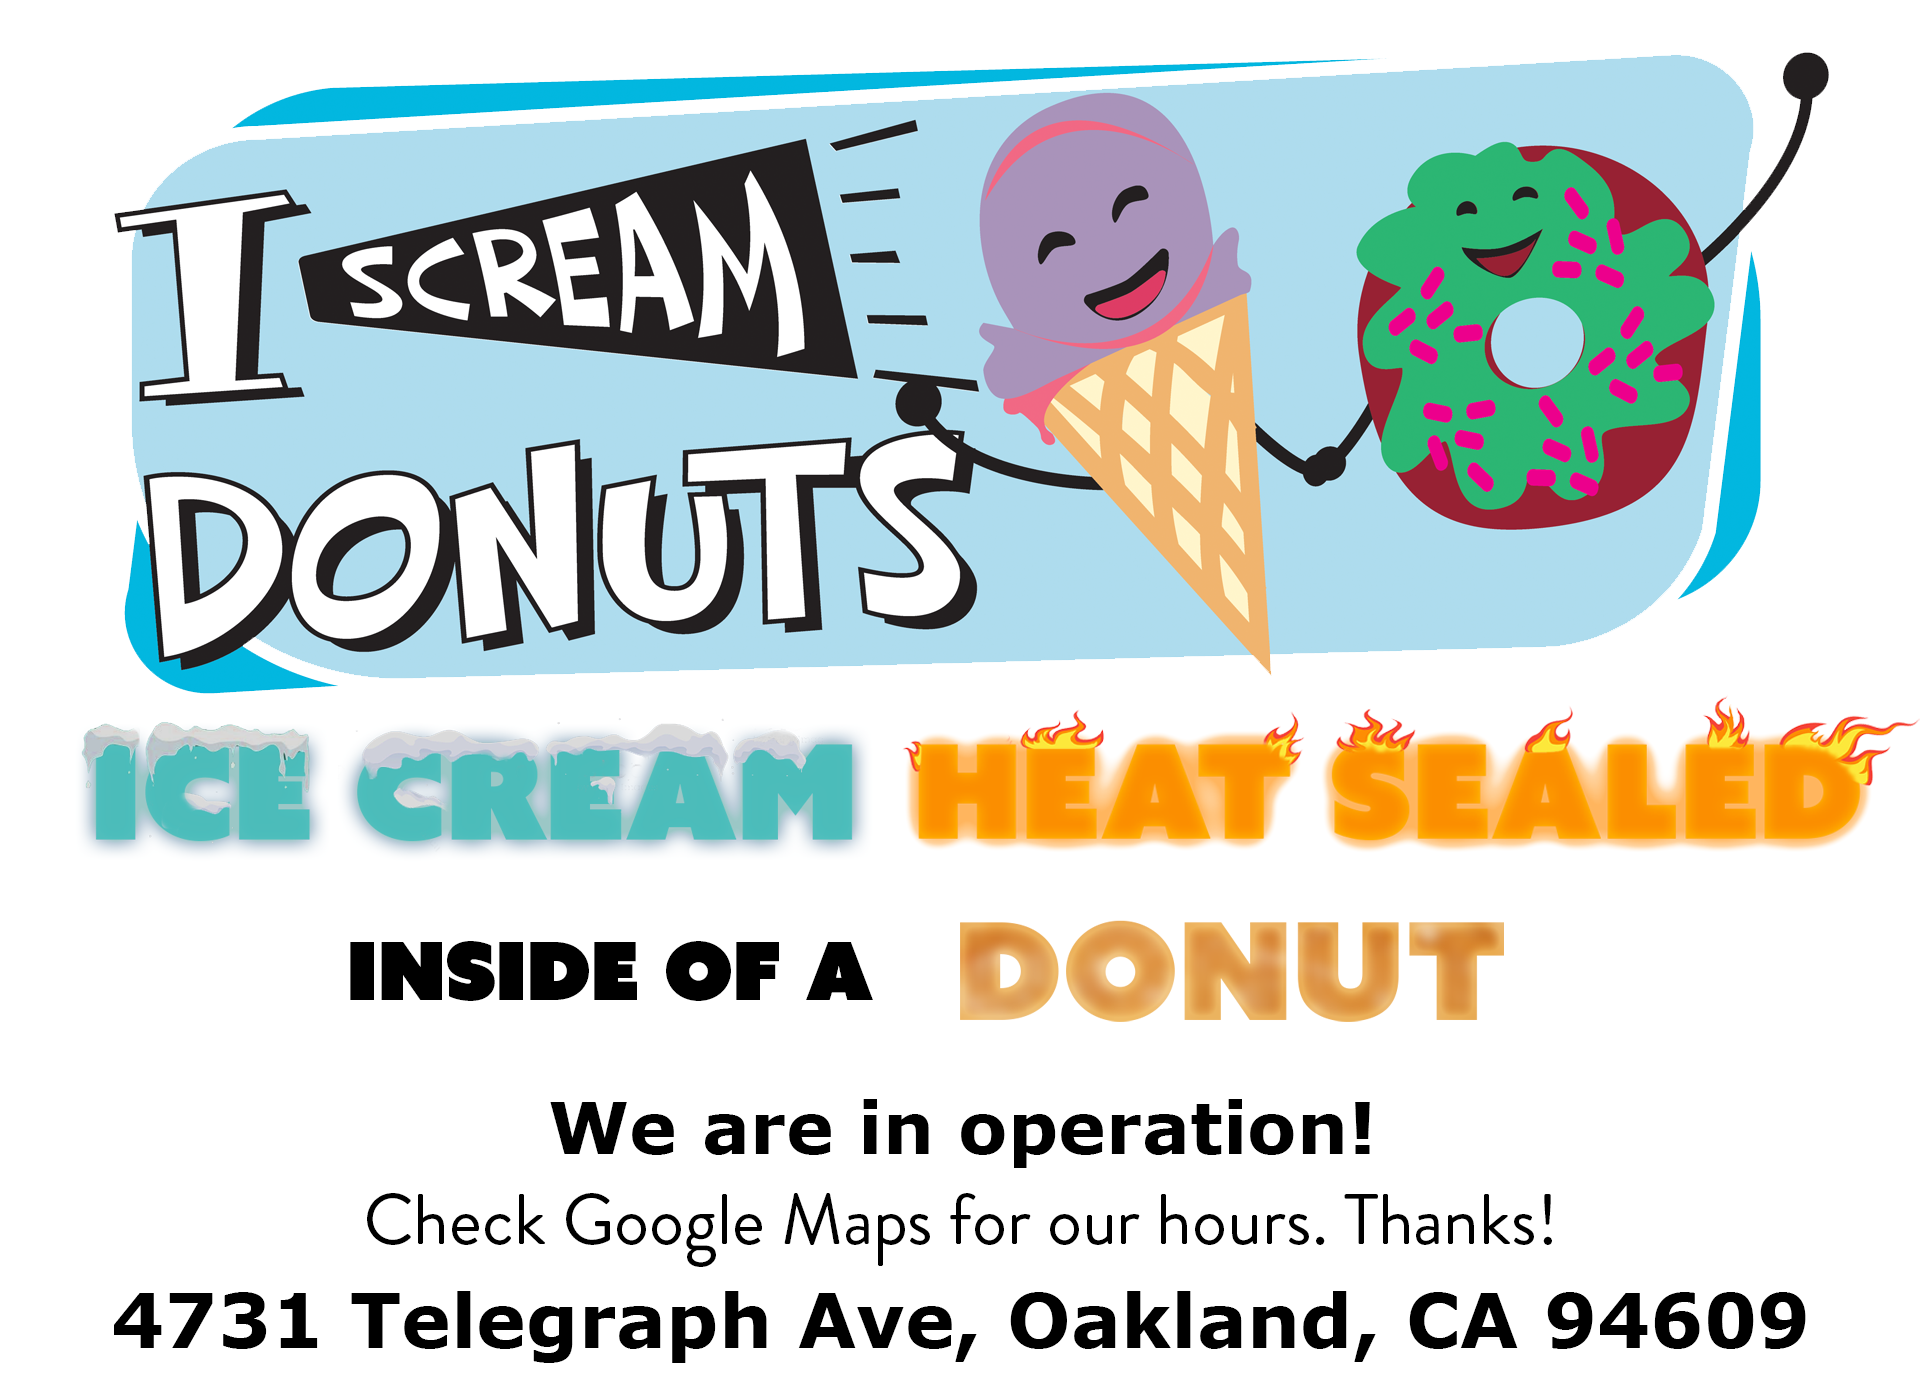 I Scream Donuts